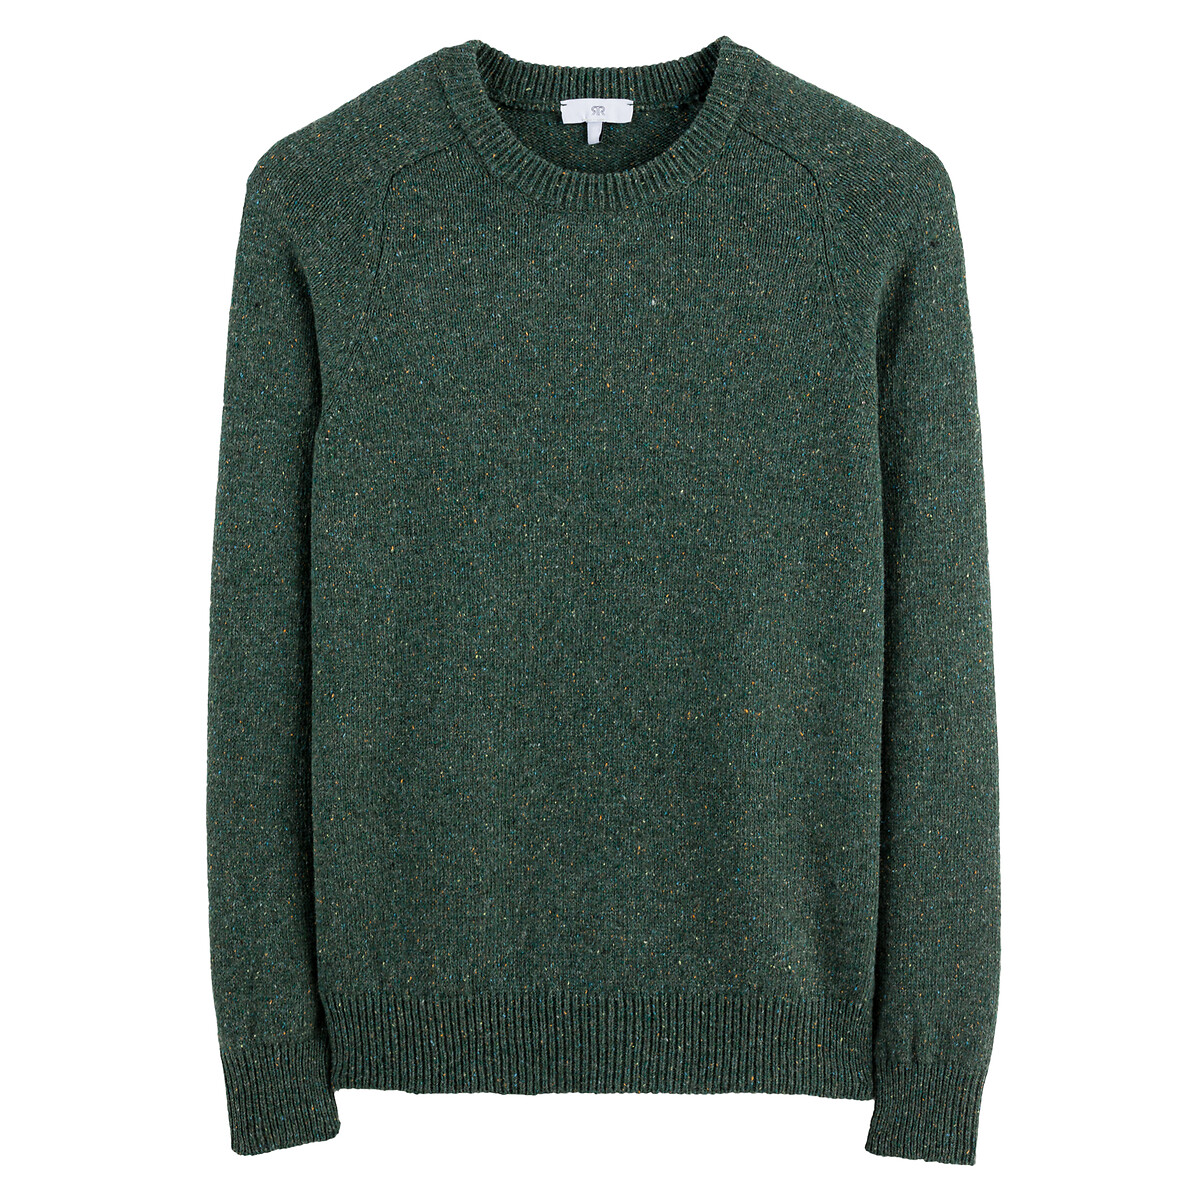 Пуловер С круглым вырезом из плотного трикотажа S зеленый LaRedoute, размер S - фото 5